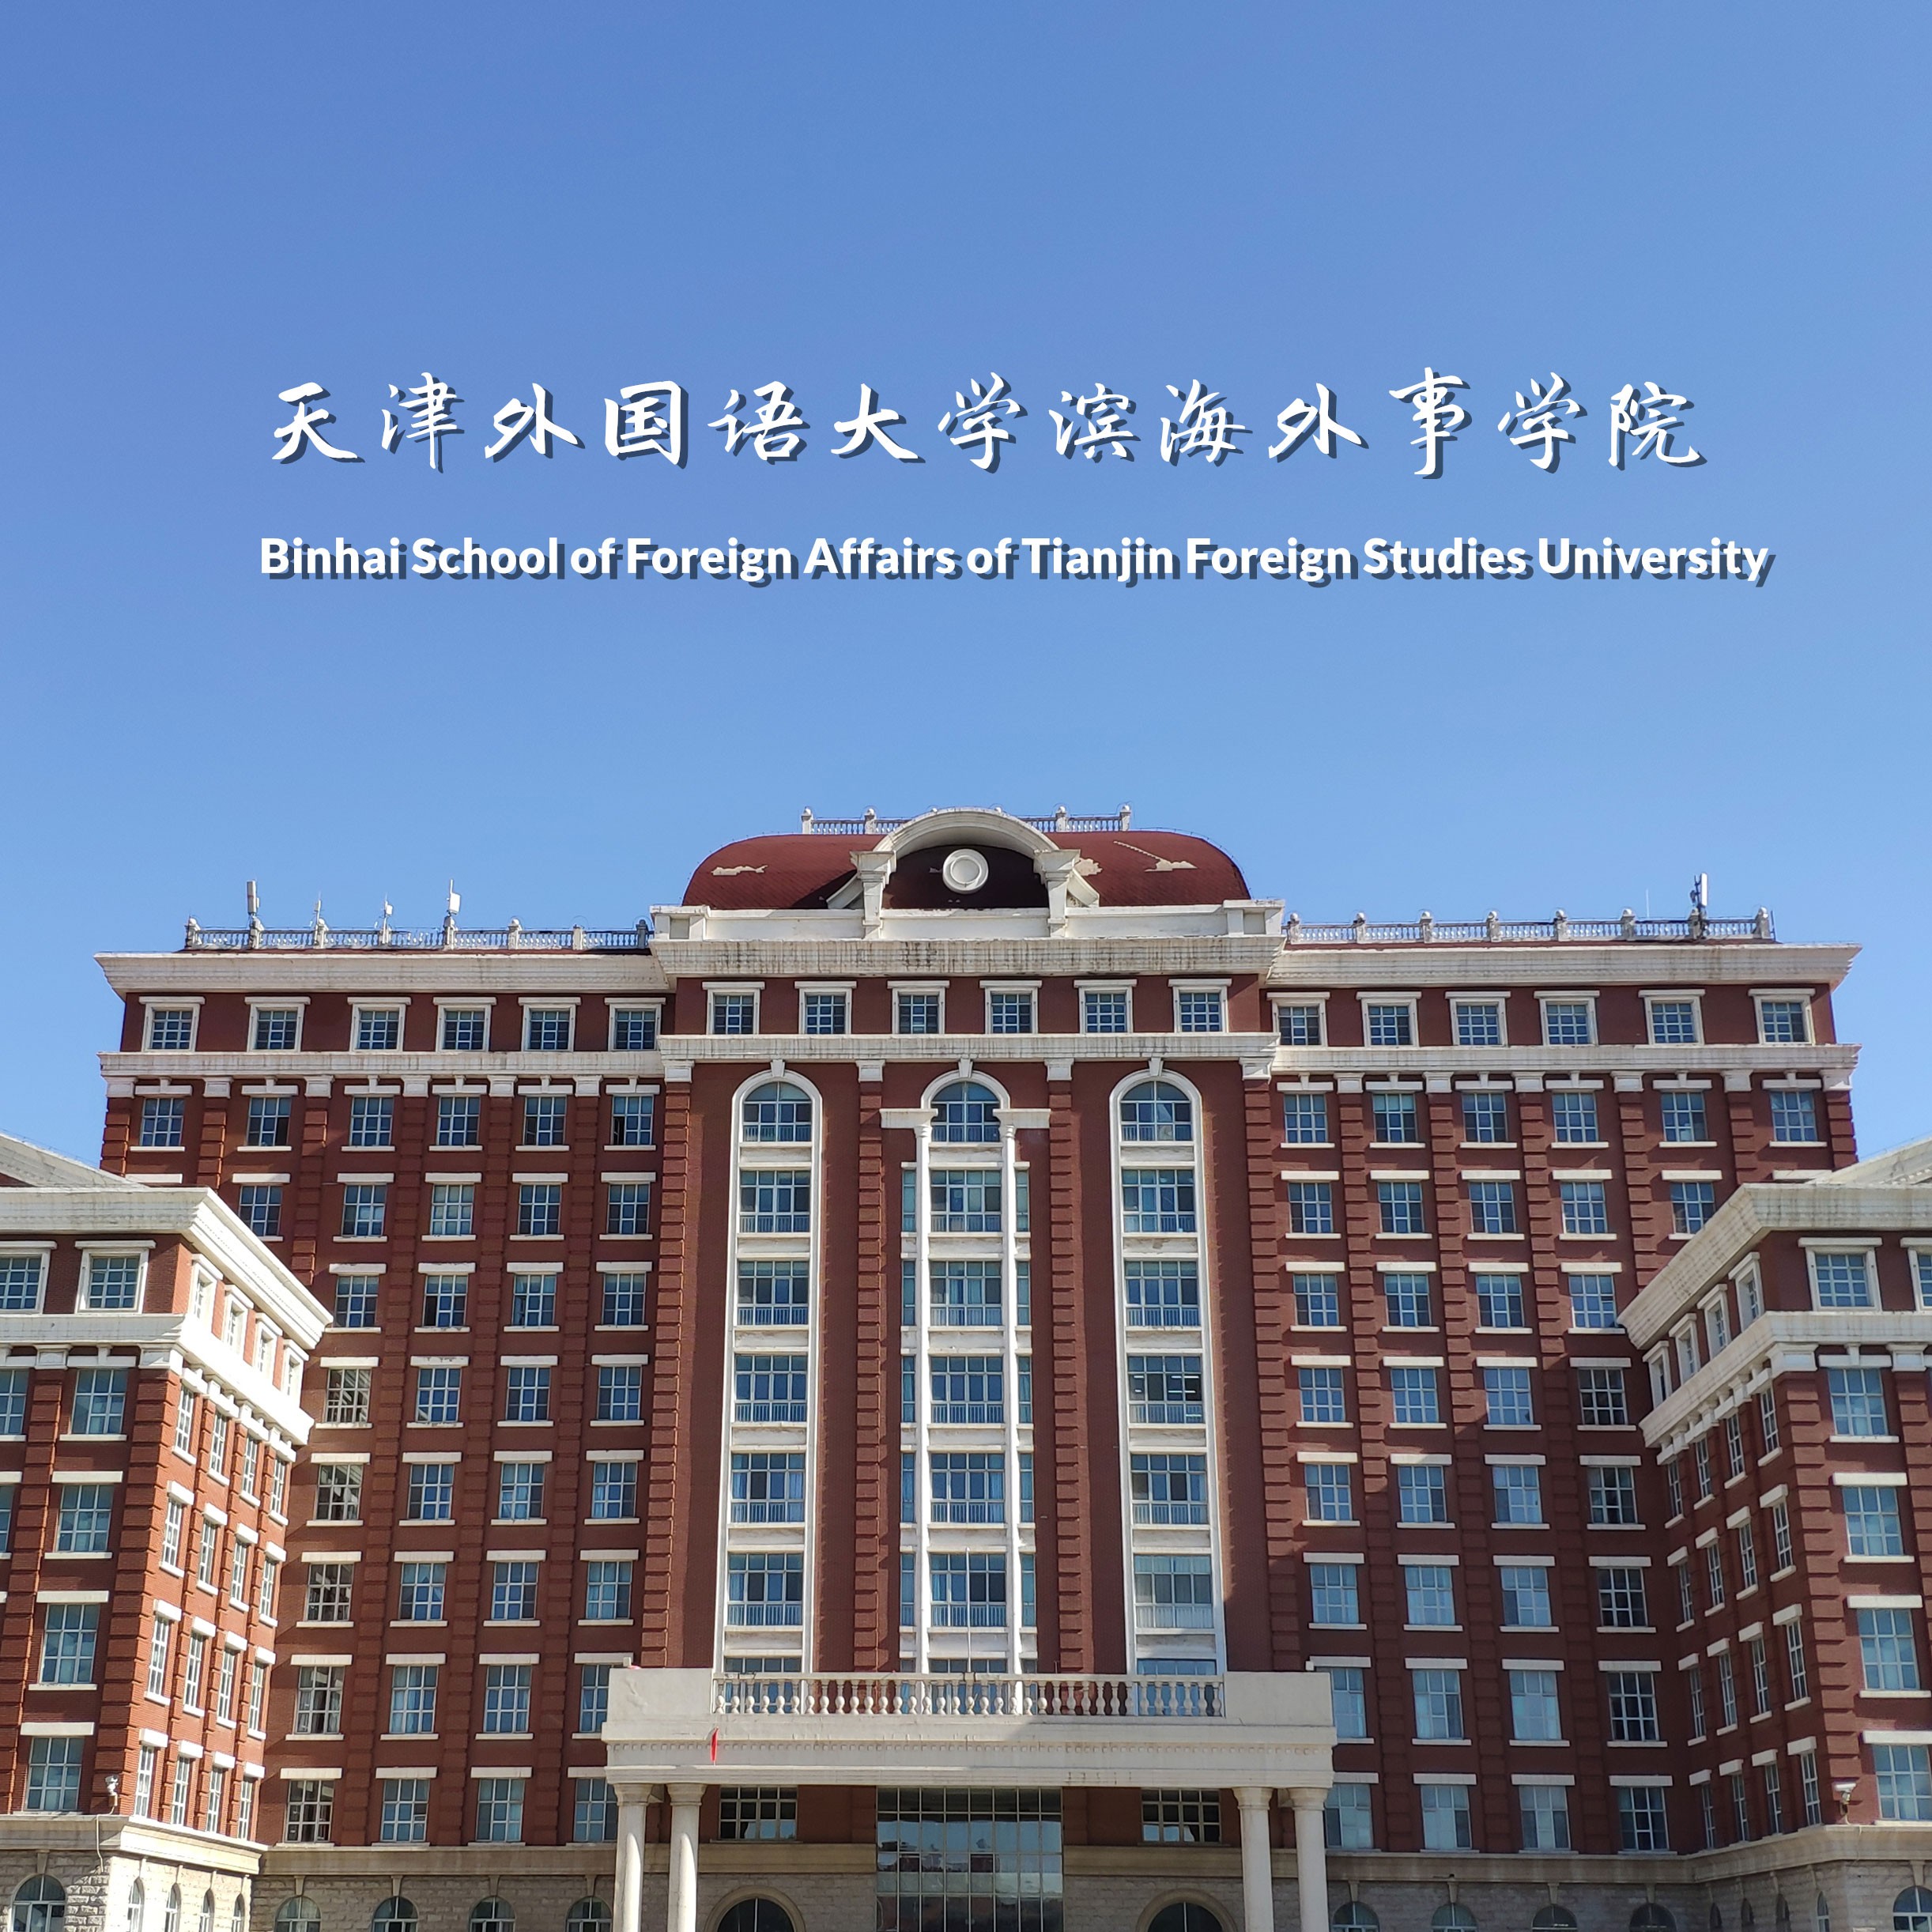 天津外国语大学滨海外事学院——一所多语种,多学科开放型的高等院校